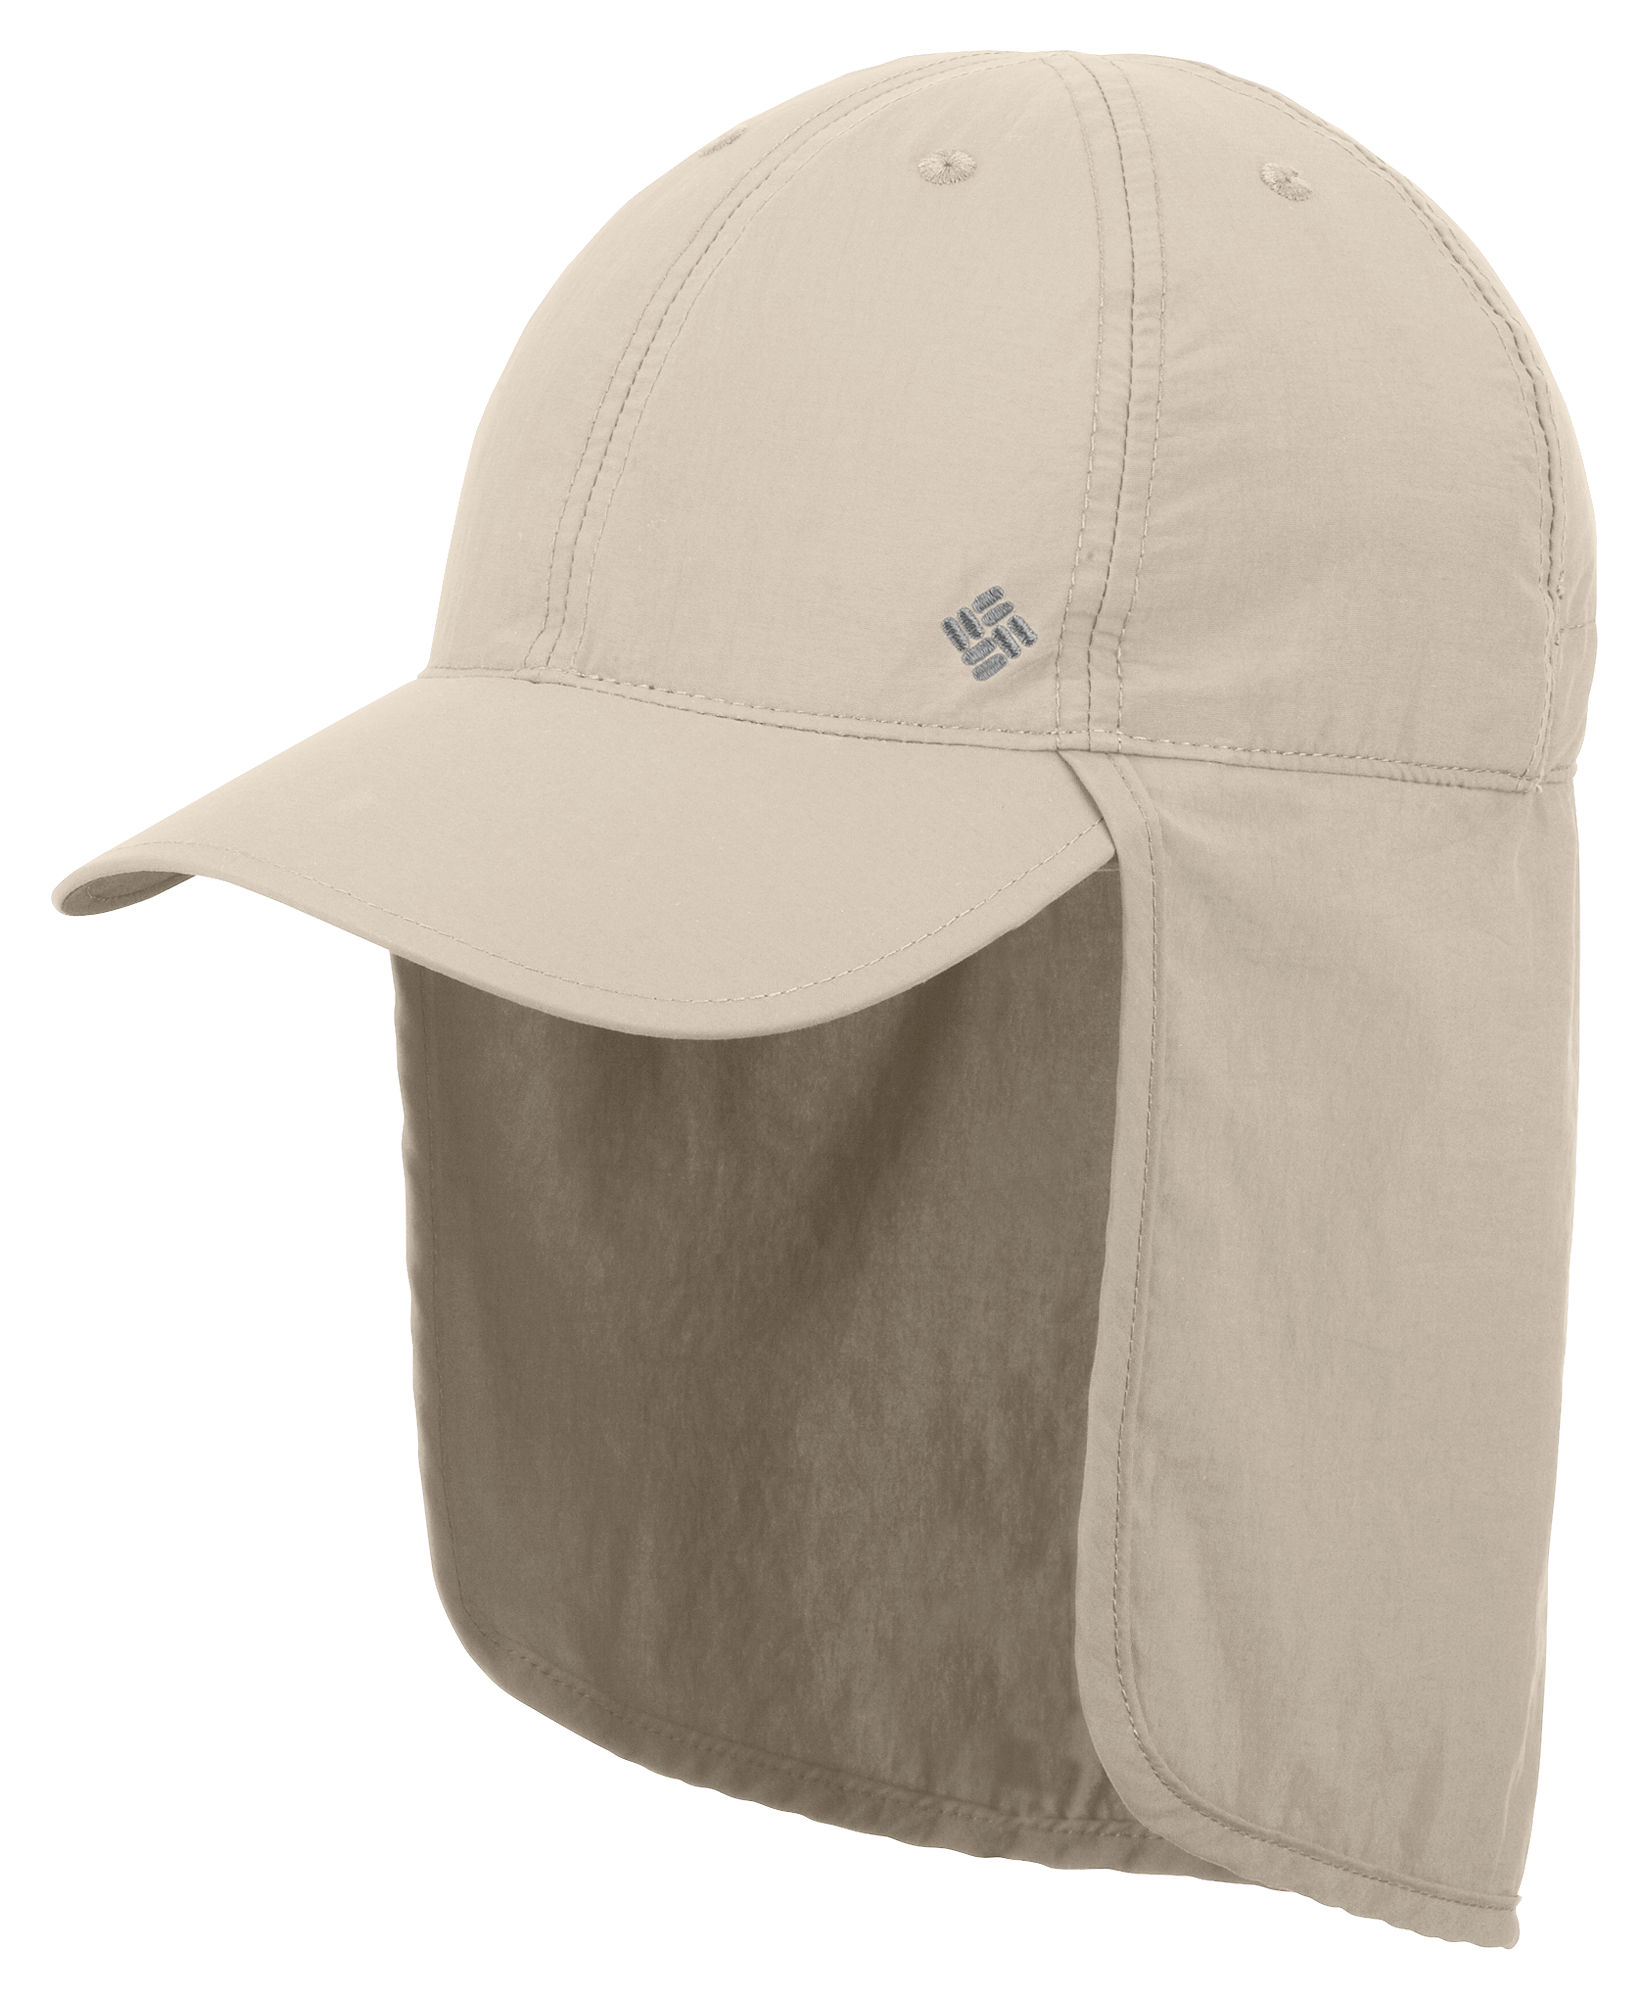 Columbia Schooner Bank Cachalot III Hat